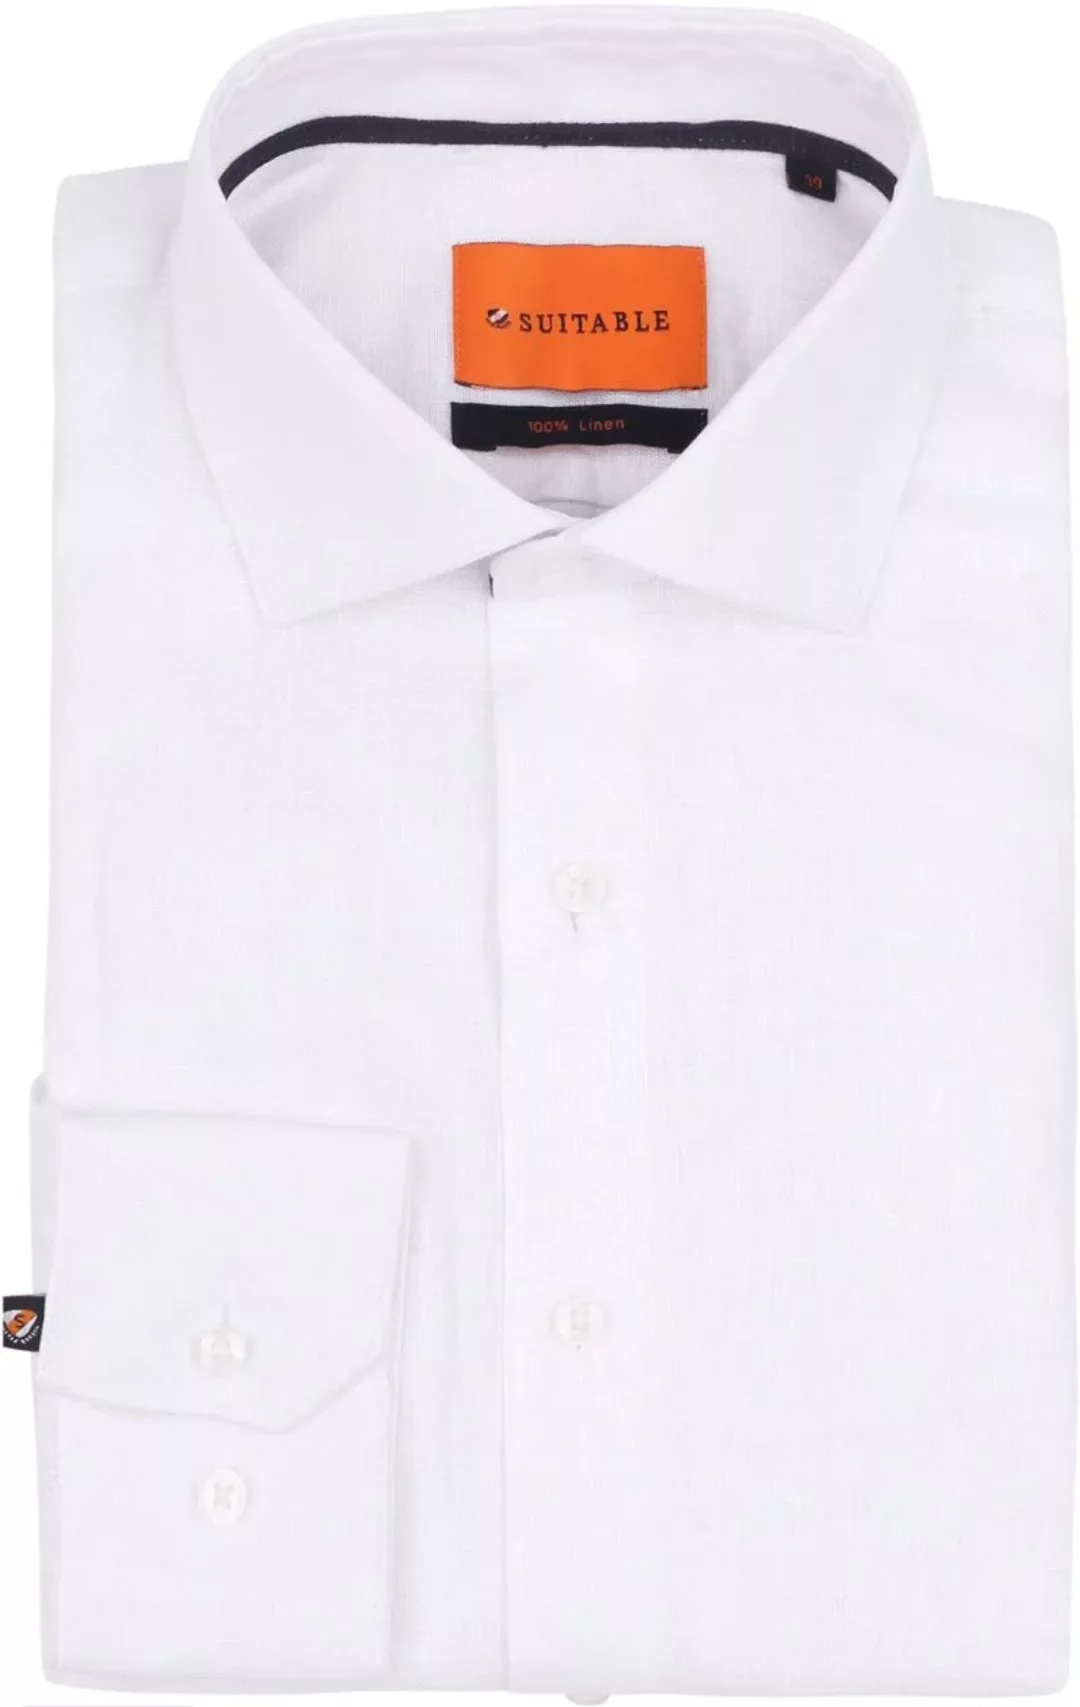 Suitable Hemd Leinen Weiß - Größe 42 günstig online kaufen